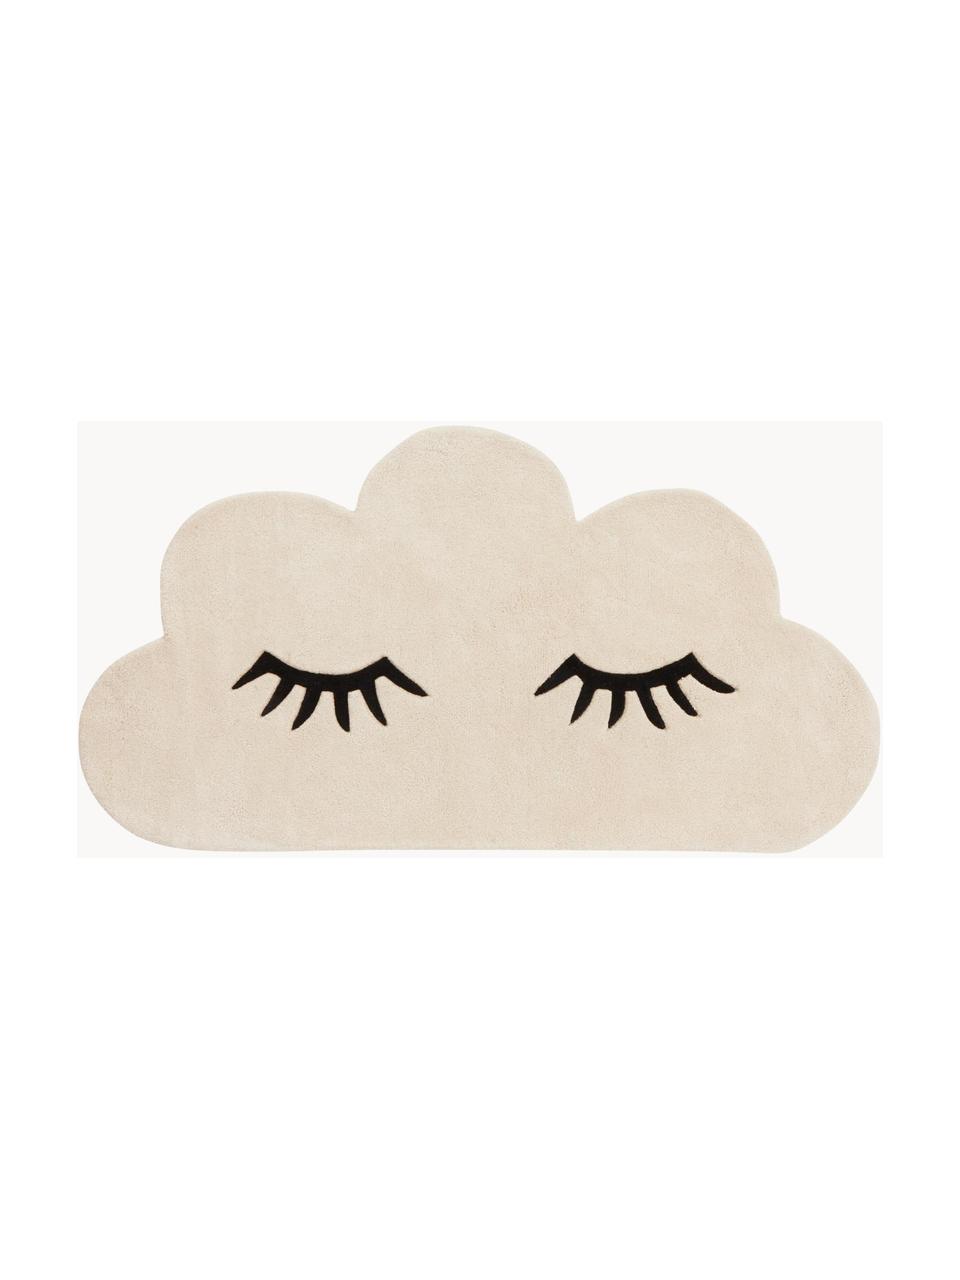 Handgetufter Kinderteppich Acasia aus Baumwolle mit Wolken-Design, 100% Bio-Baumwolle, Beige, Schwarz, B 75 x L 140 cm (Größe XS)